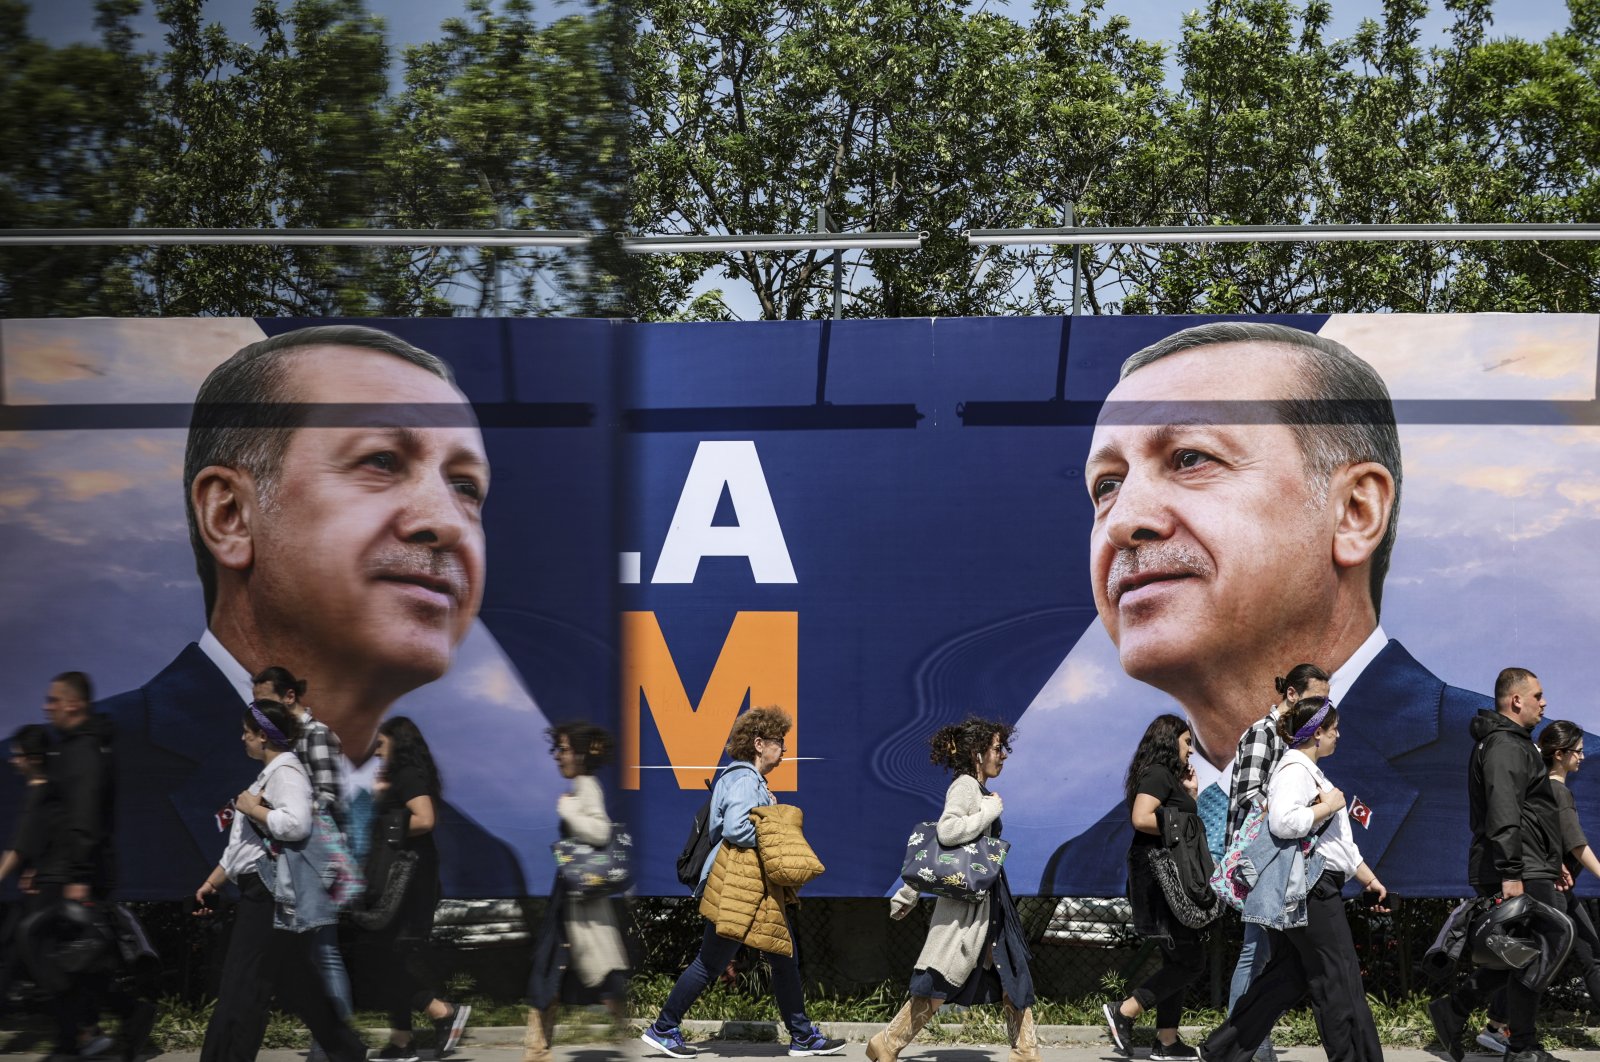 Apakah perombakan kebijakan ekonomi sudah terlihat setelah limpasan Türkiye?